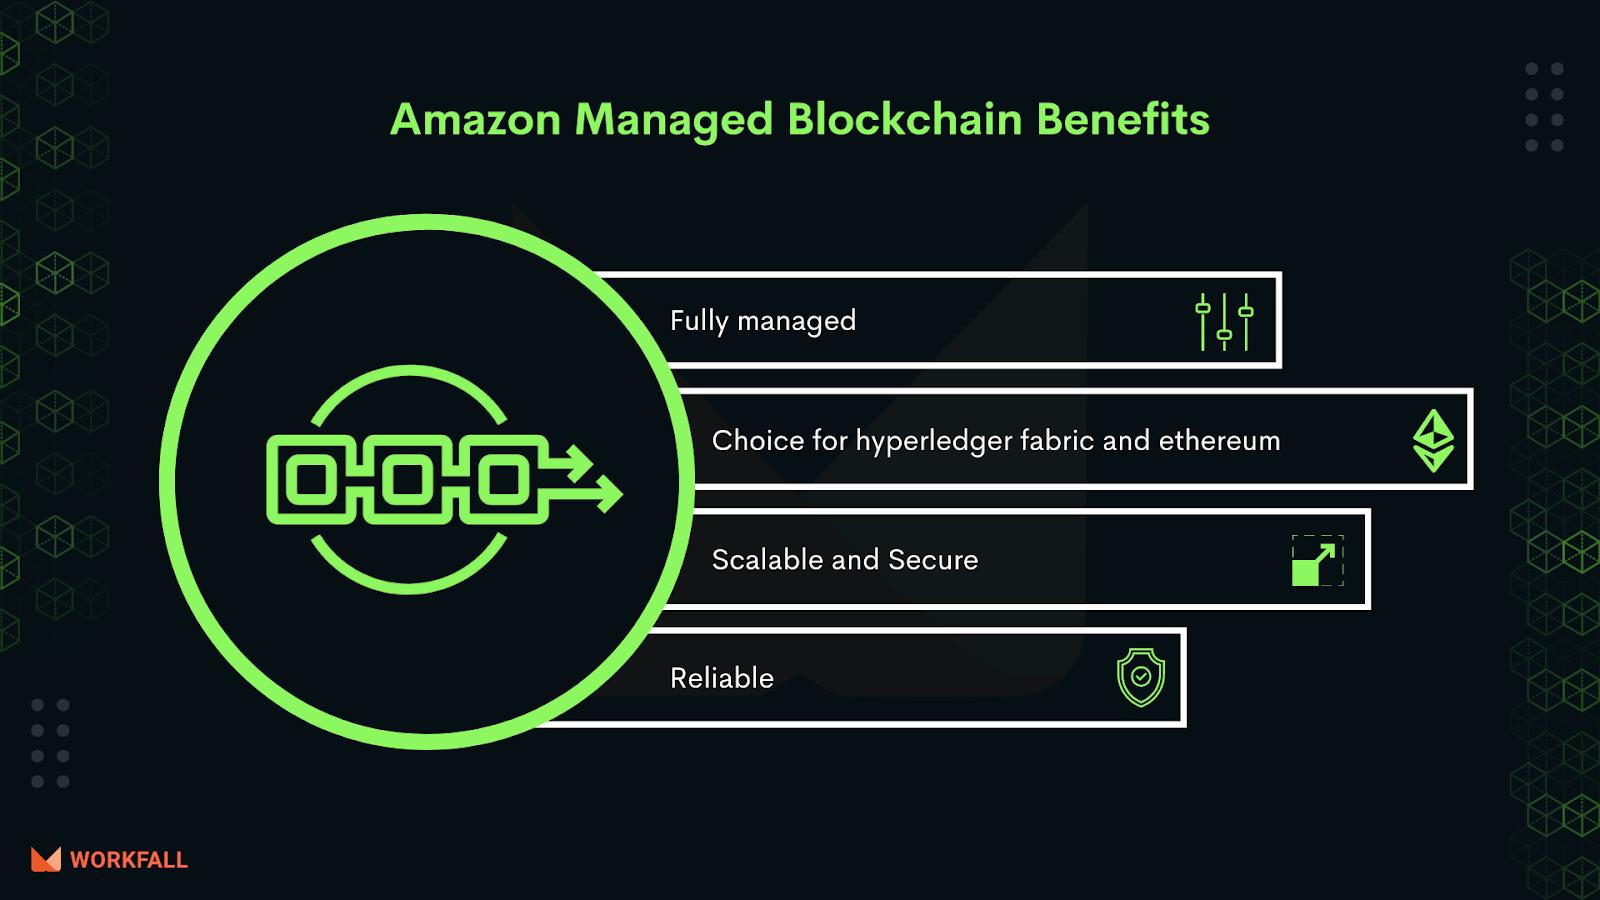 Benefits of Amazon Managed Blockchain